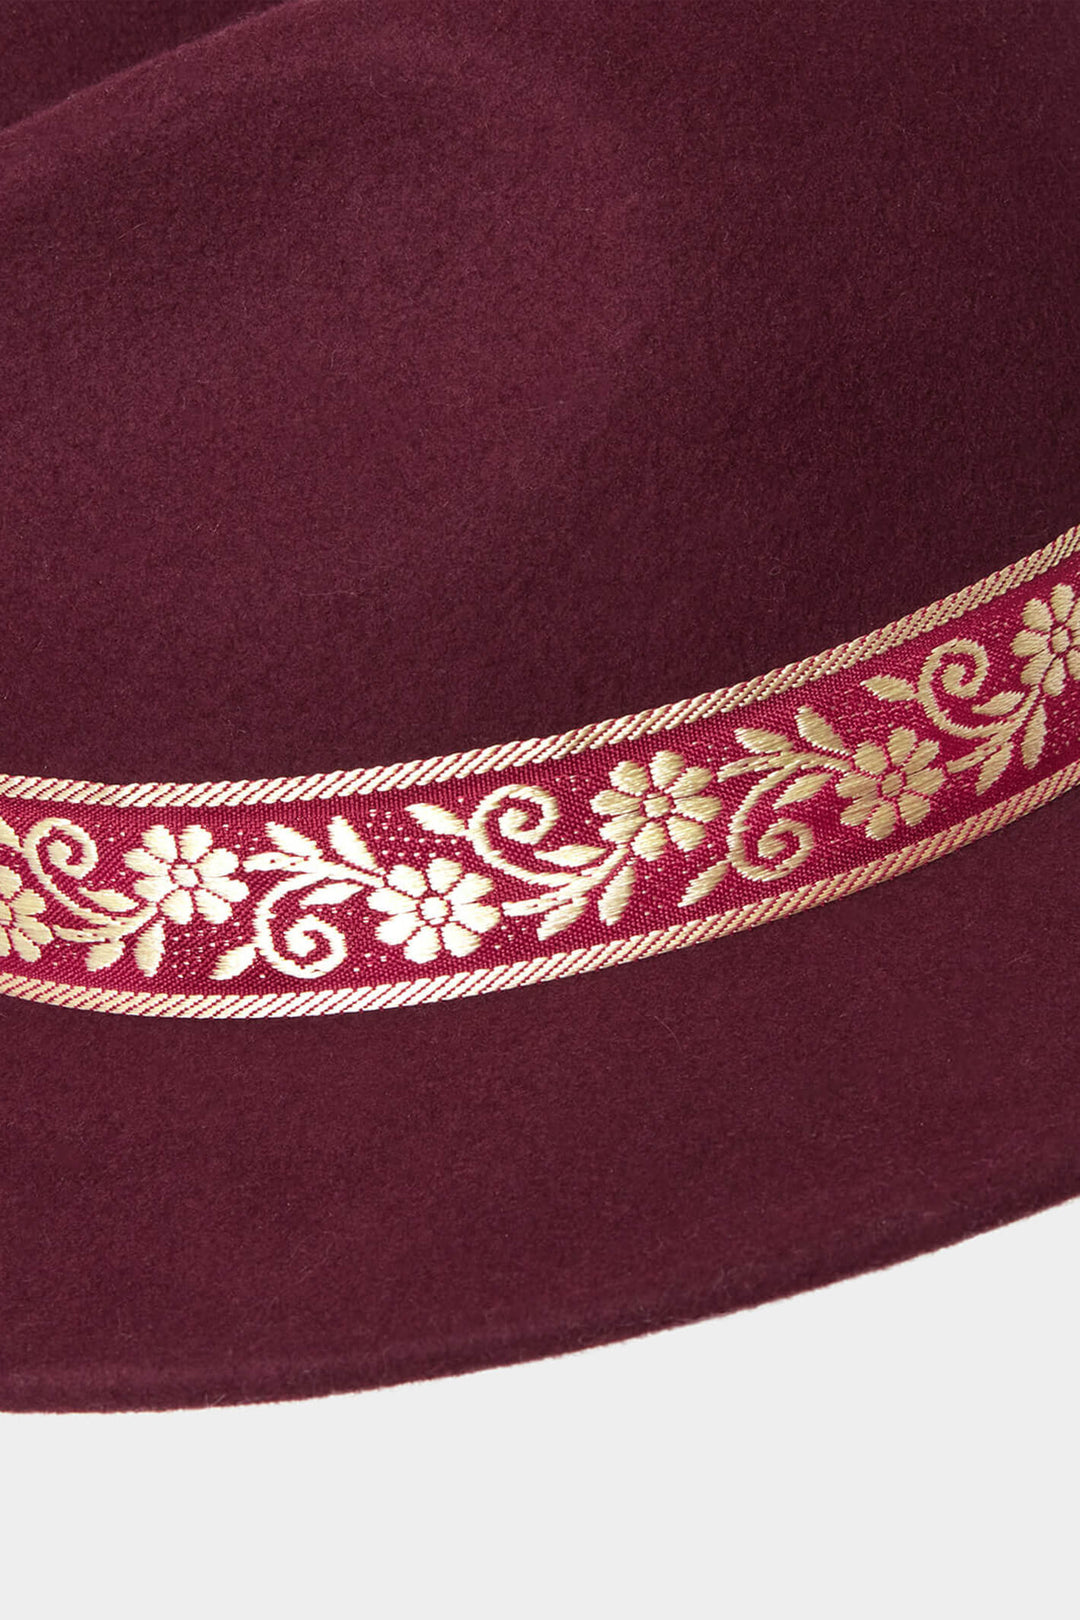 Joe Browns HB363 Burgundy Red Keep It Sleek Wool Fedora Hat - Experience Boutique